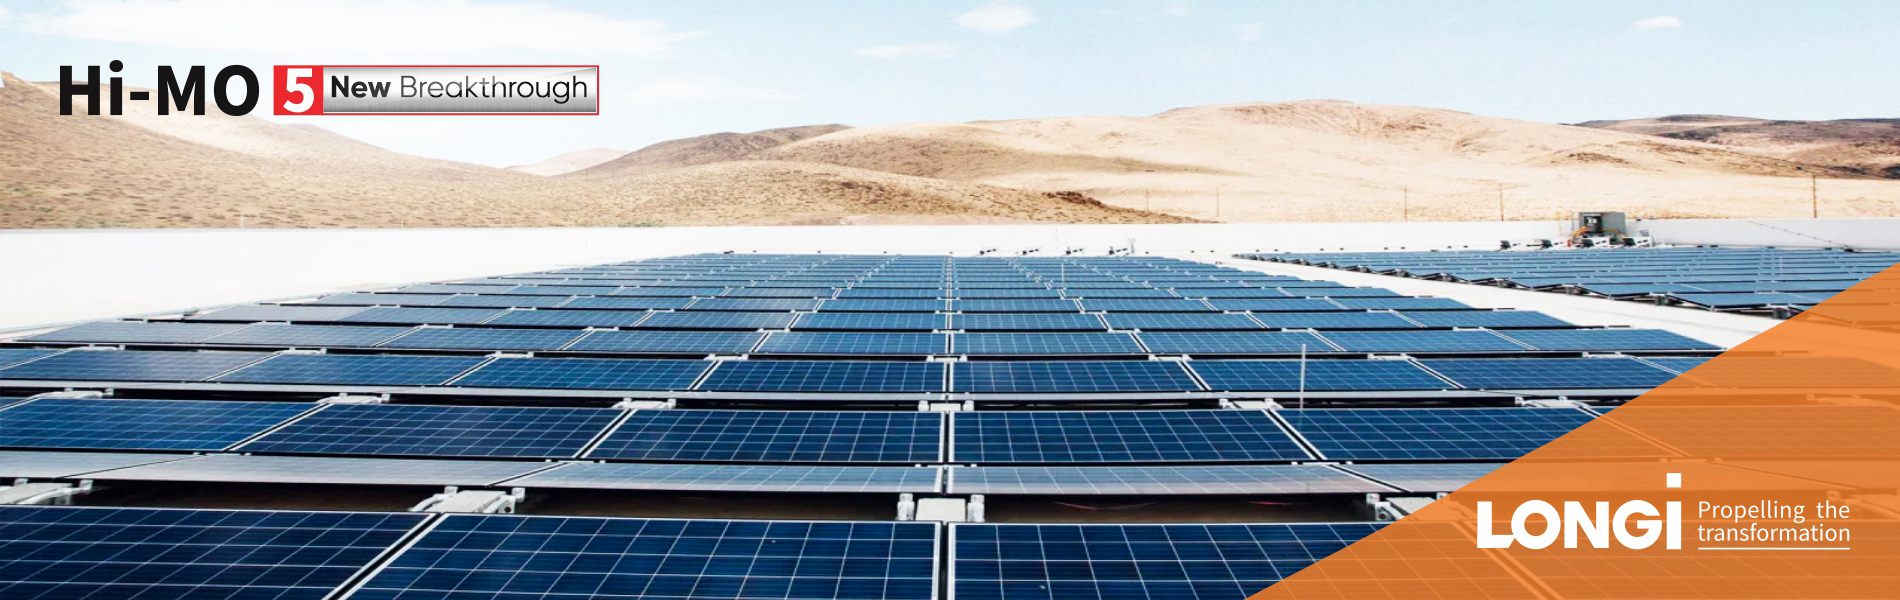 Longi solar panels - Trustworthy Solar Panels